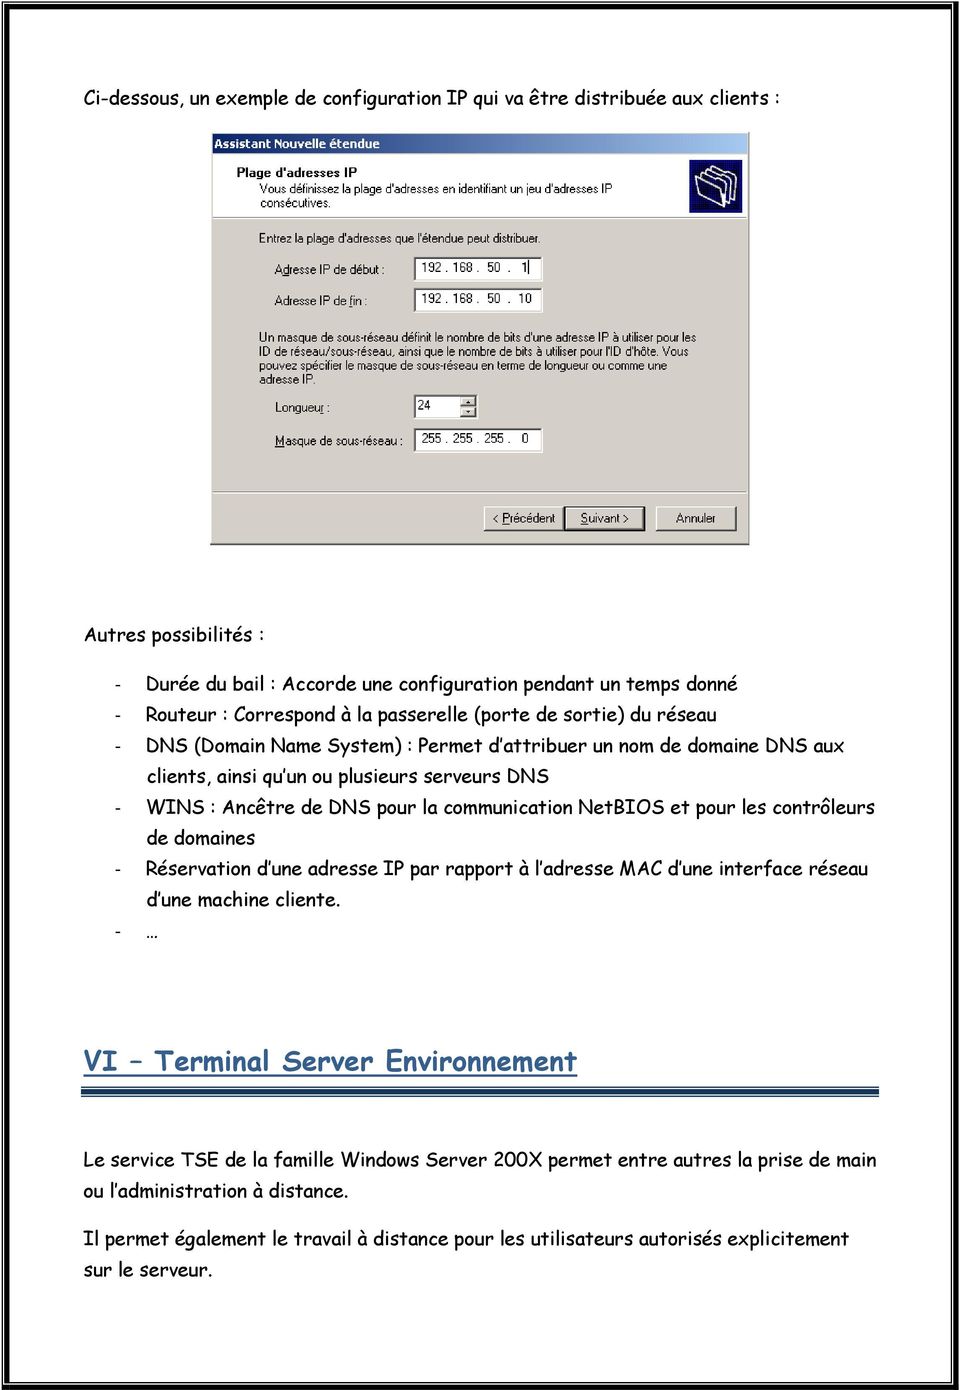 communication NetBIOS et pour les contrôleurs de domaines - Réservation d une adresse IP par rapport à l adresse MAC d une interface réseau d une machine cliente.